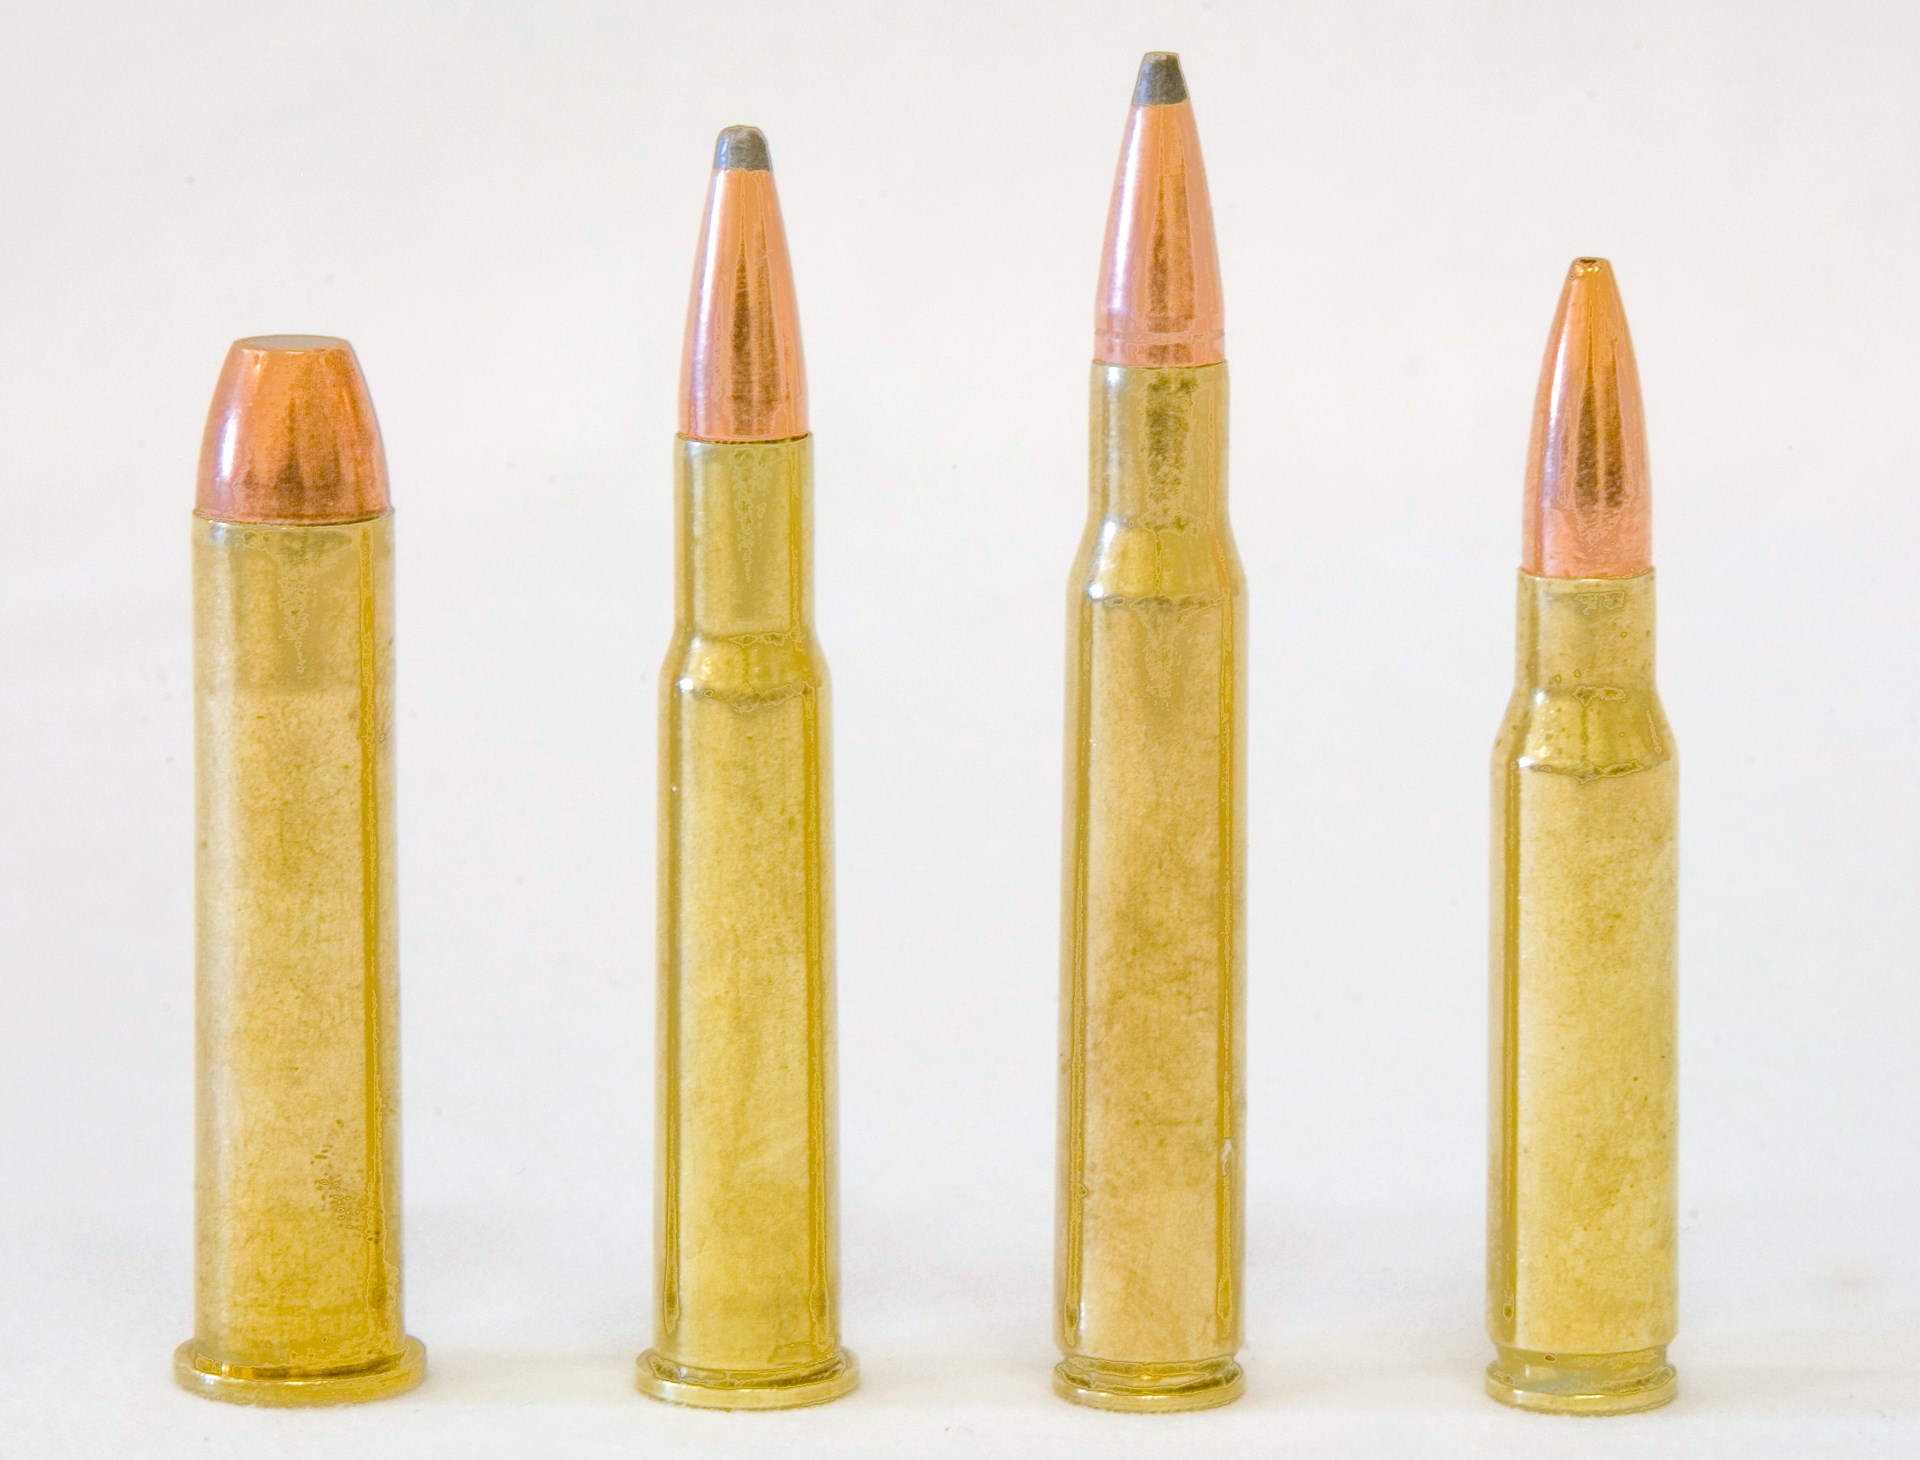 Cartridge ammunition bullet comparison row line picket fence arrangement of ammo